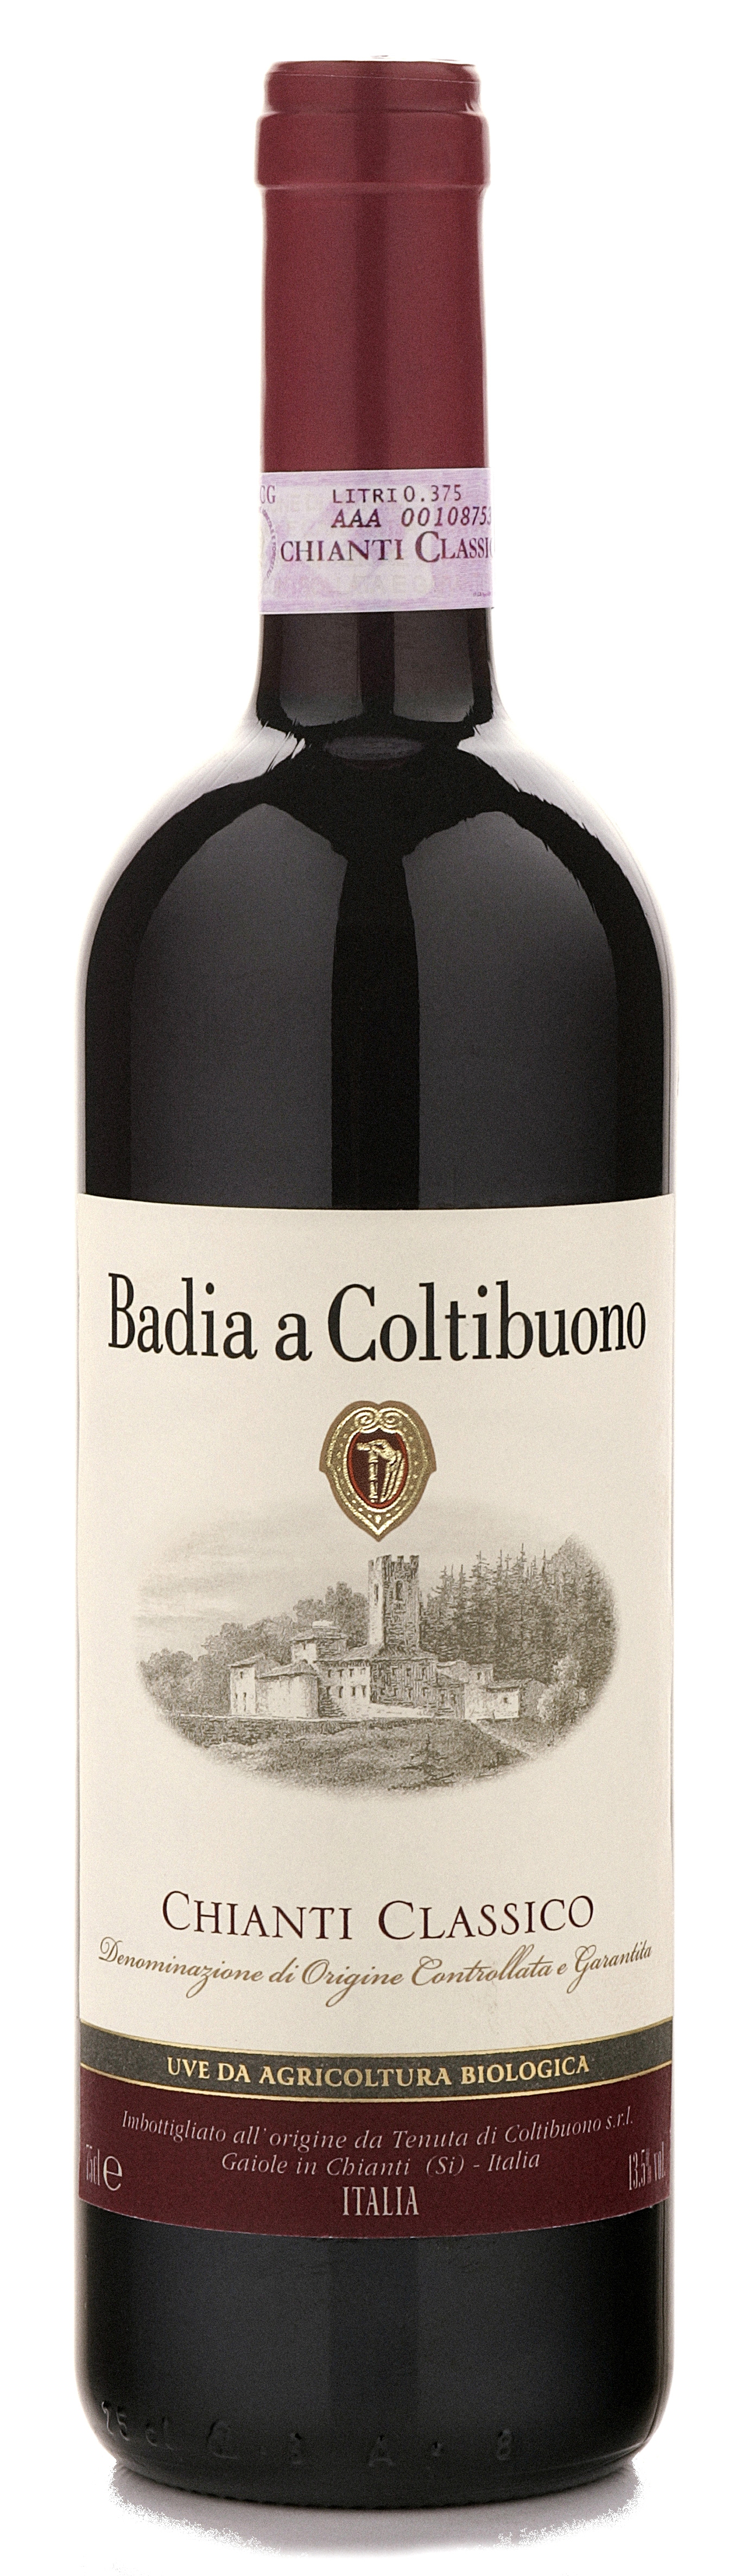 Chianti classico biologico badia 2014  , Vin italien